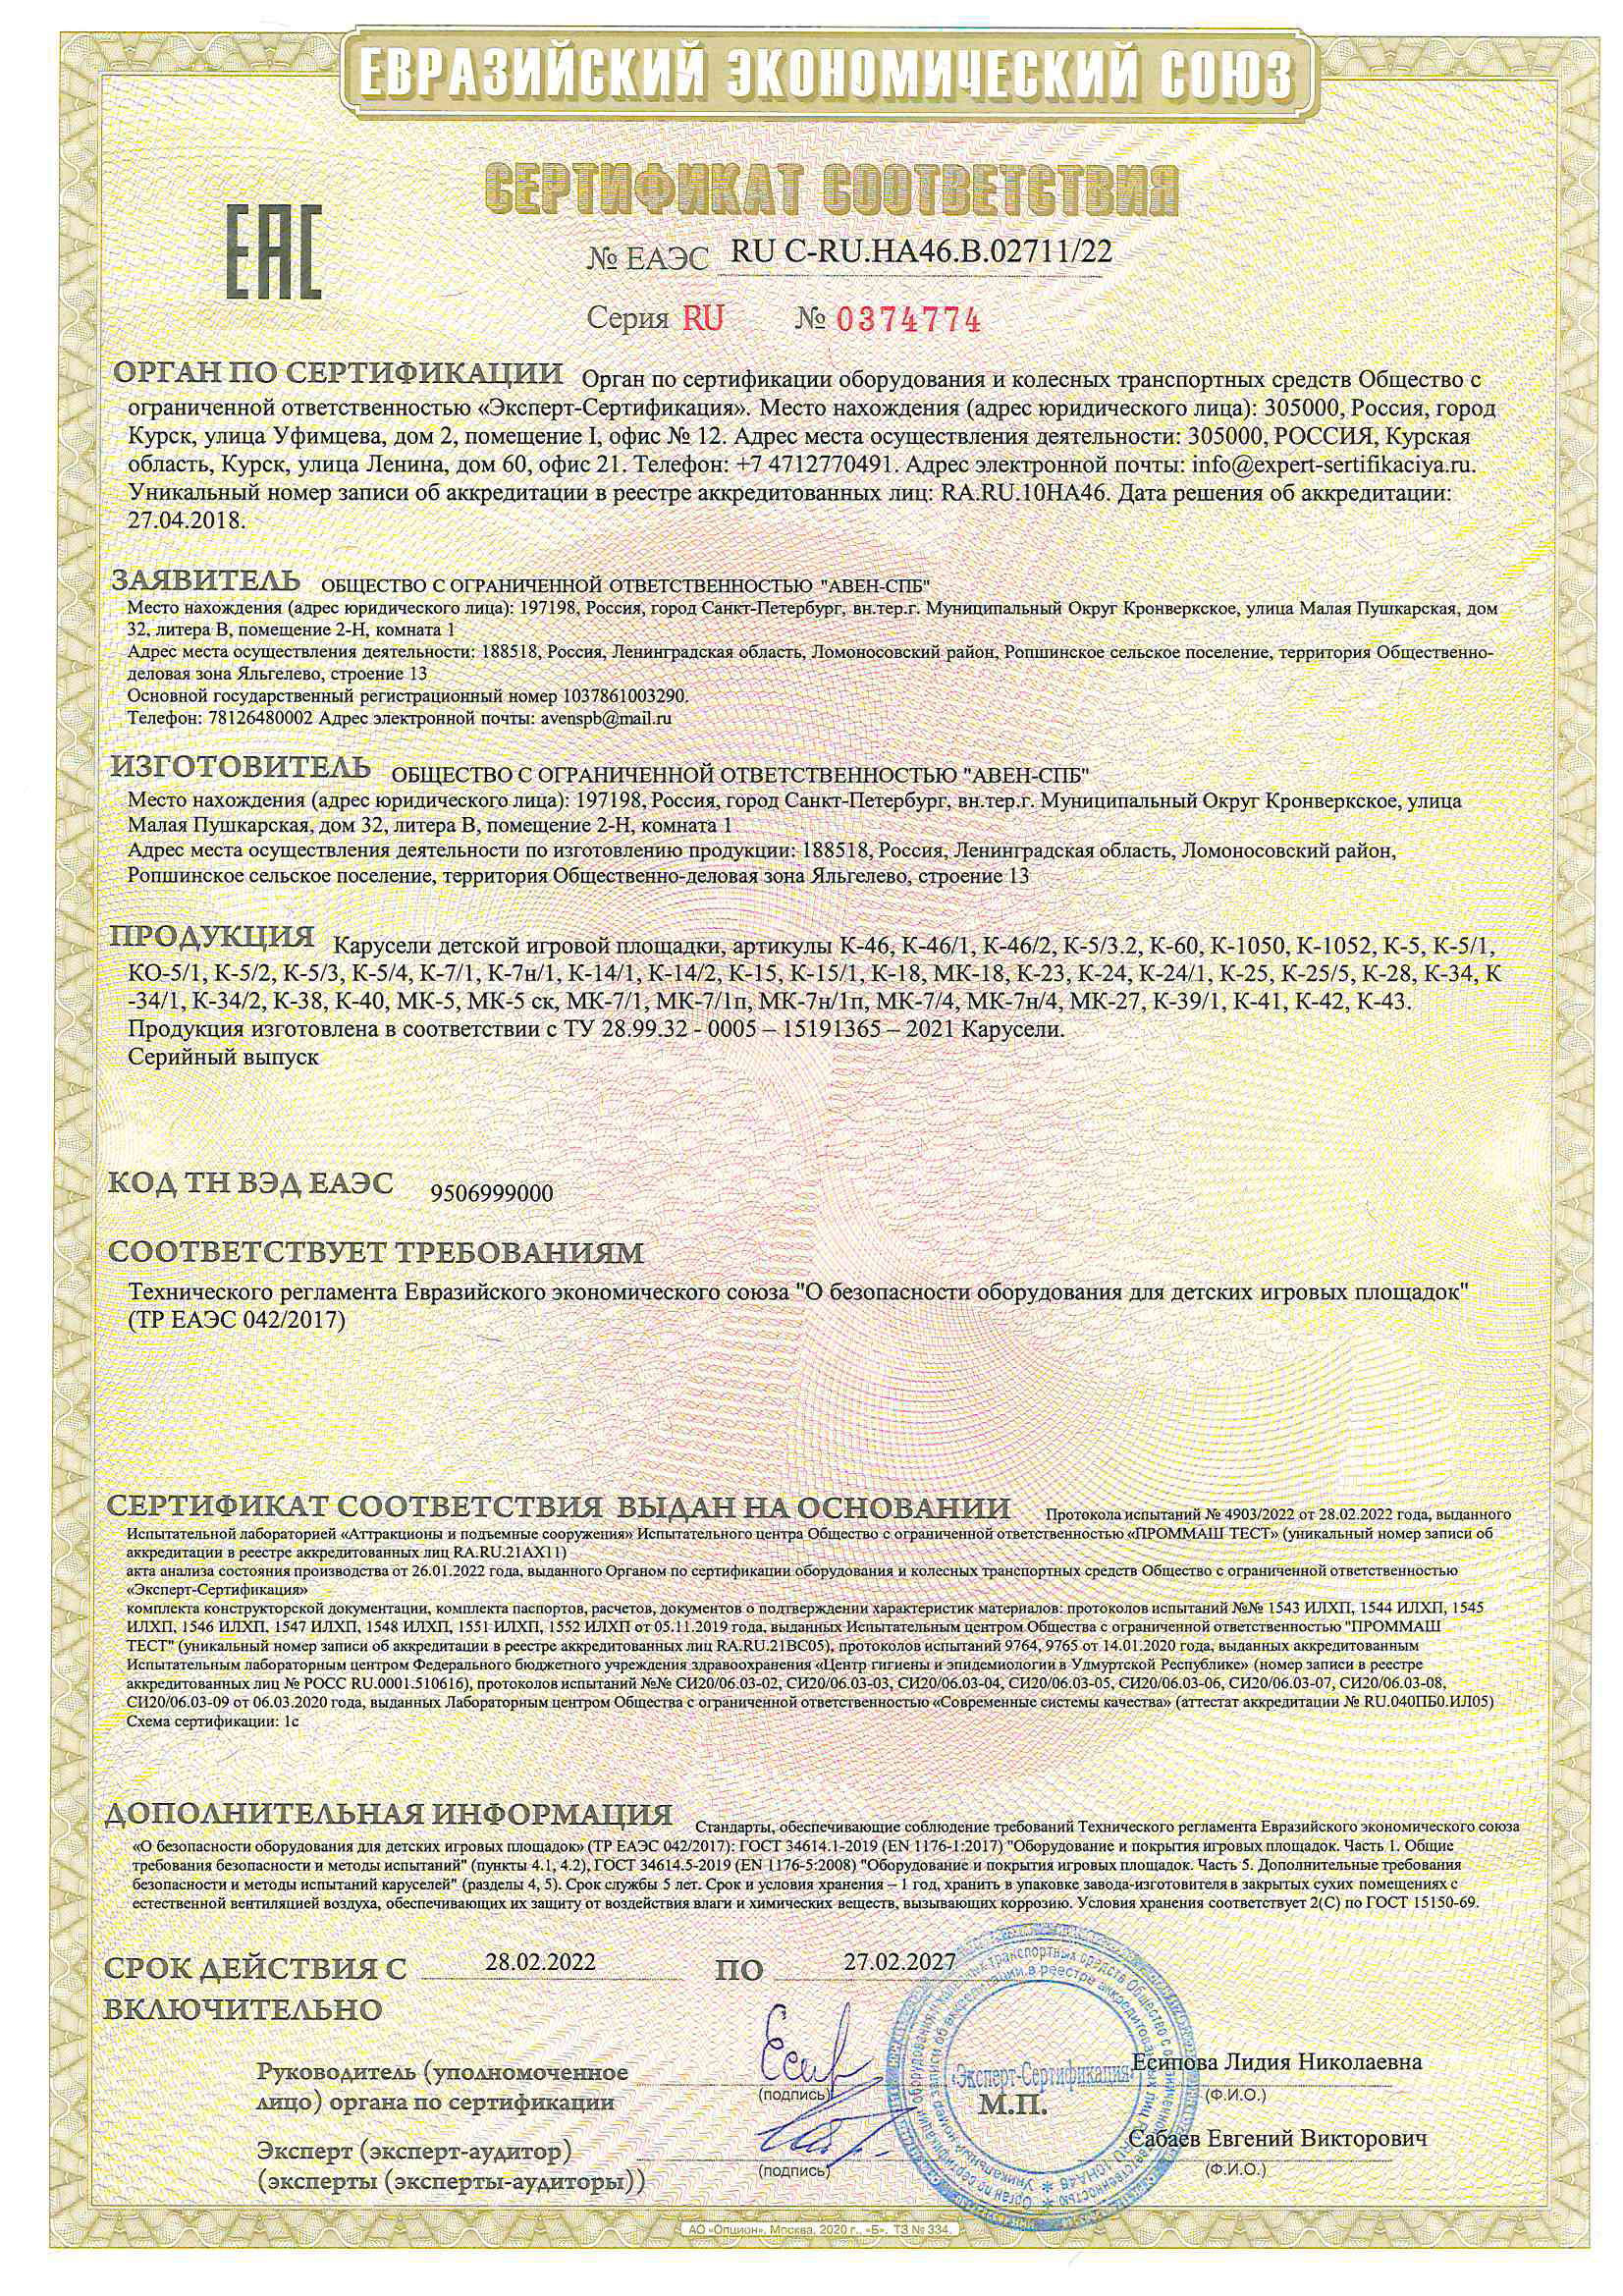 Сертификат   соответствия  № ЕА   ЭC RU-C-RU.HA46.B.02714/22 cерия RU № 0374774 на детское игровое оборудование _ карусели детские 